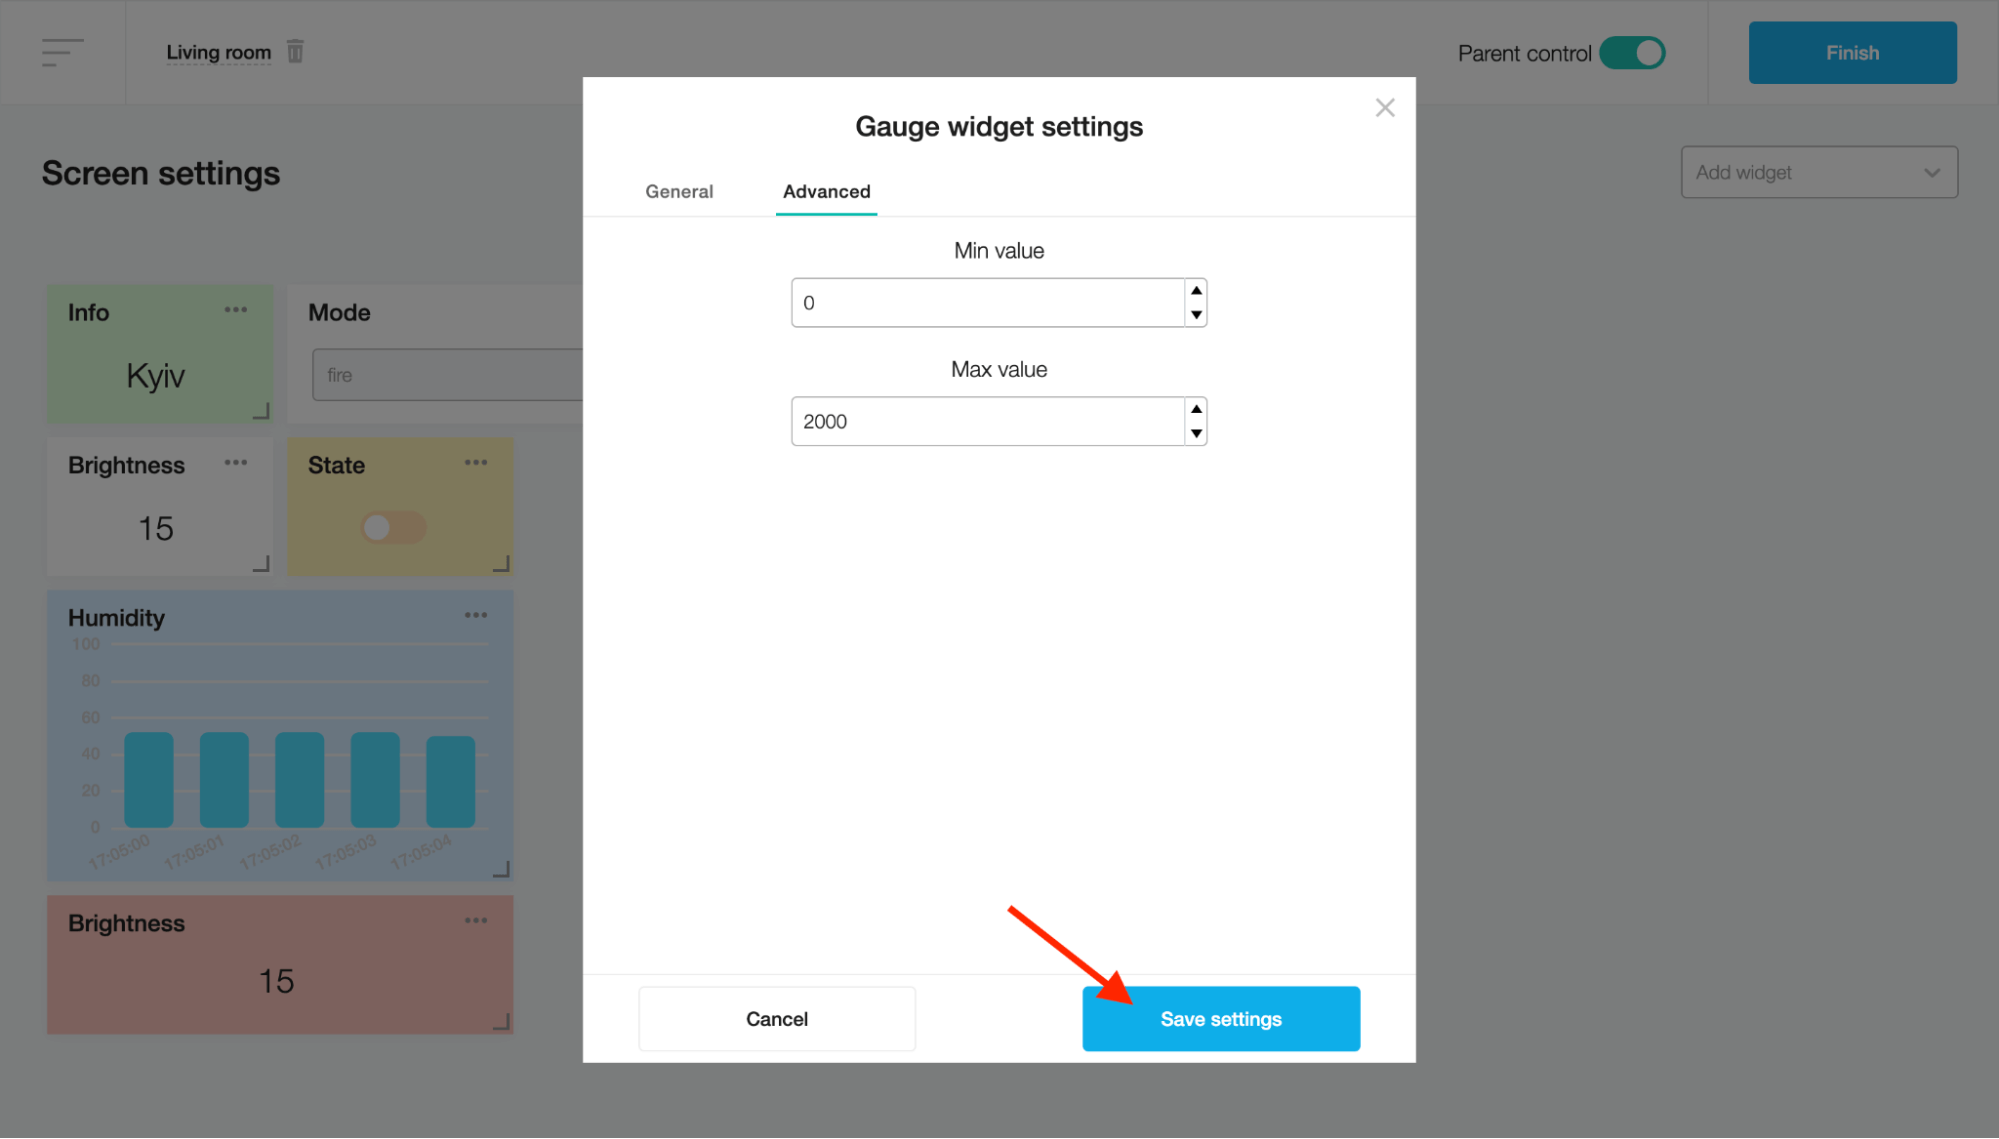 Gauge widget settings